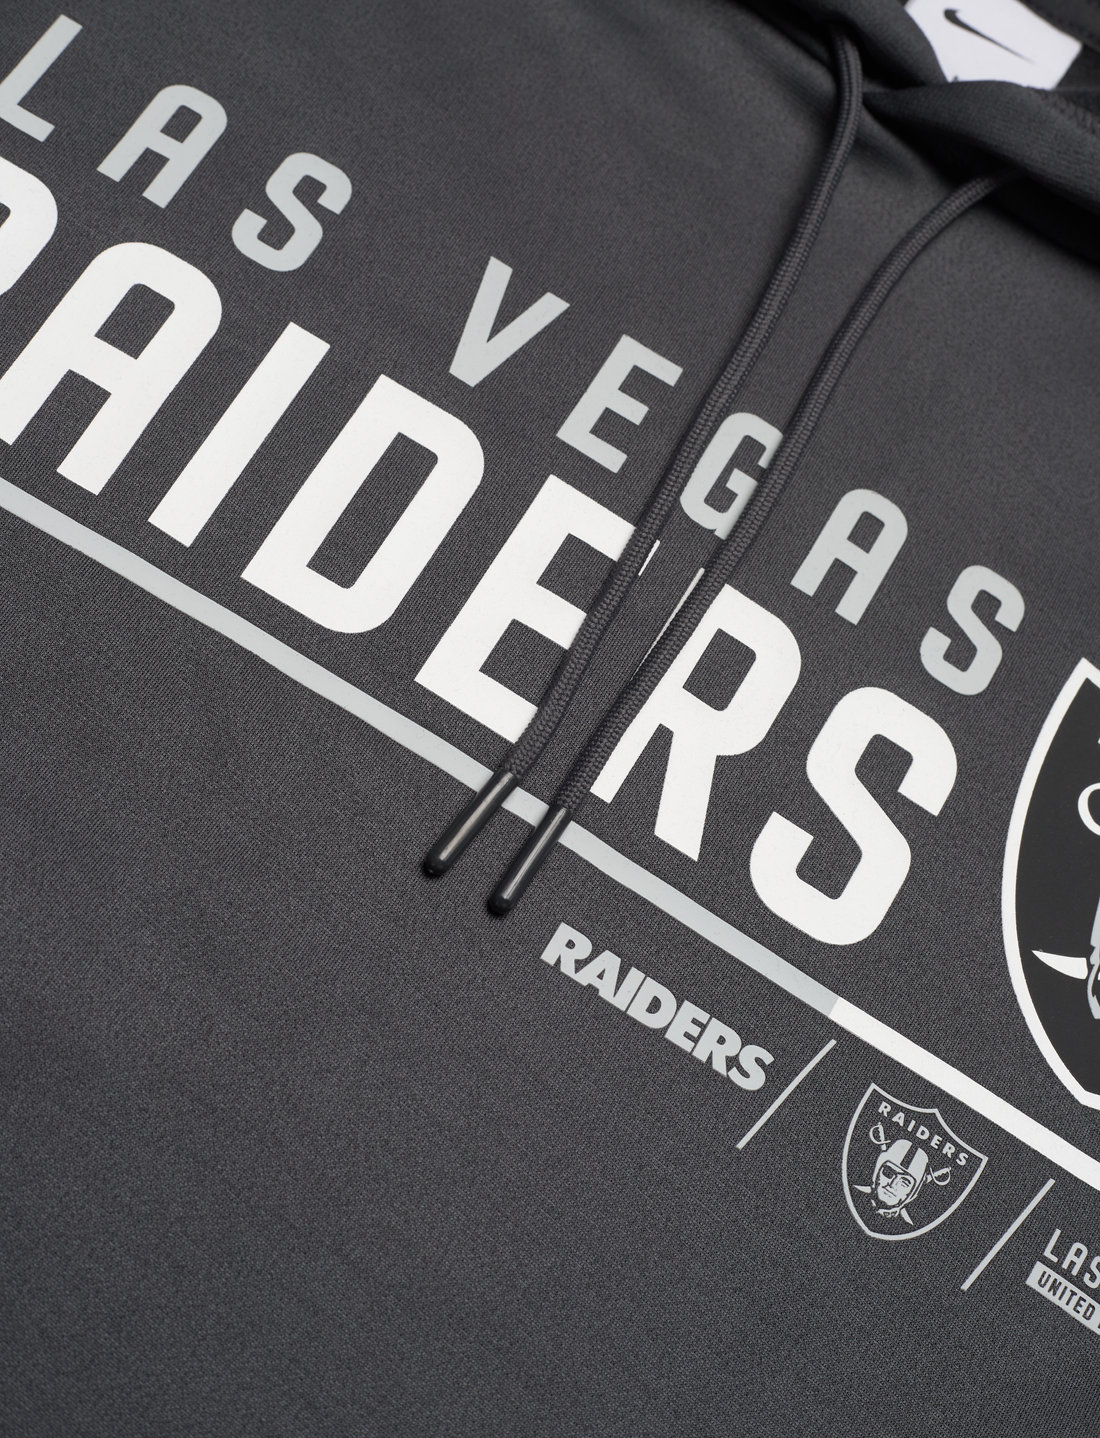 NIKE Fan Gear Las Vegas Raiders Mens Nike Therma Pullover Hoodie - Hoodies  